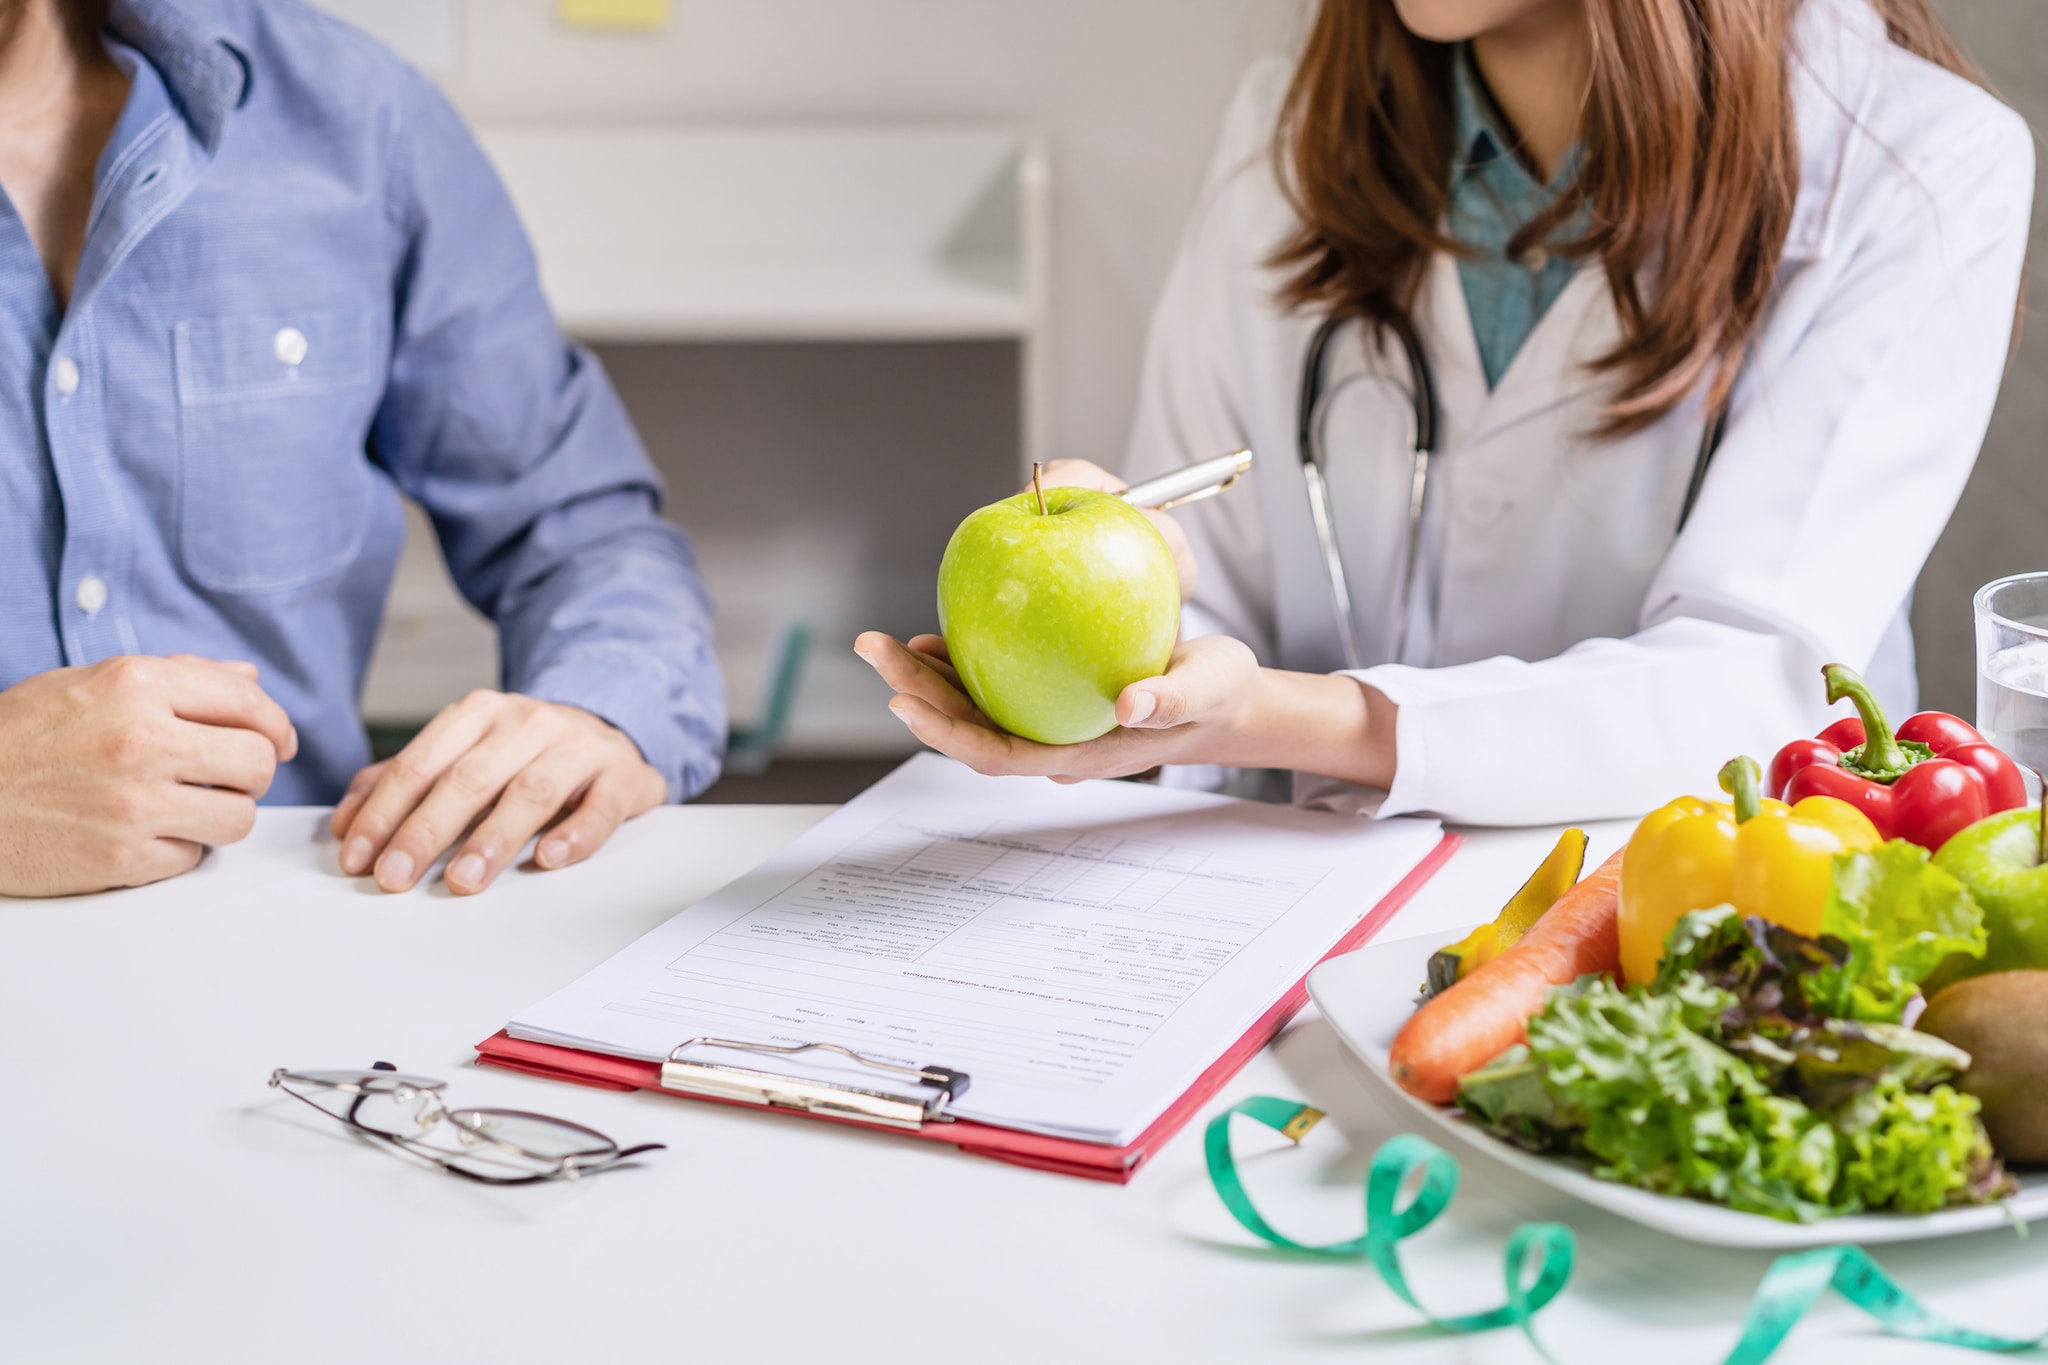 Una dietista o nutricionista atendiendo a un paciente, se ve un plato con una variedad de frutas y vegetales.